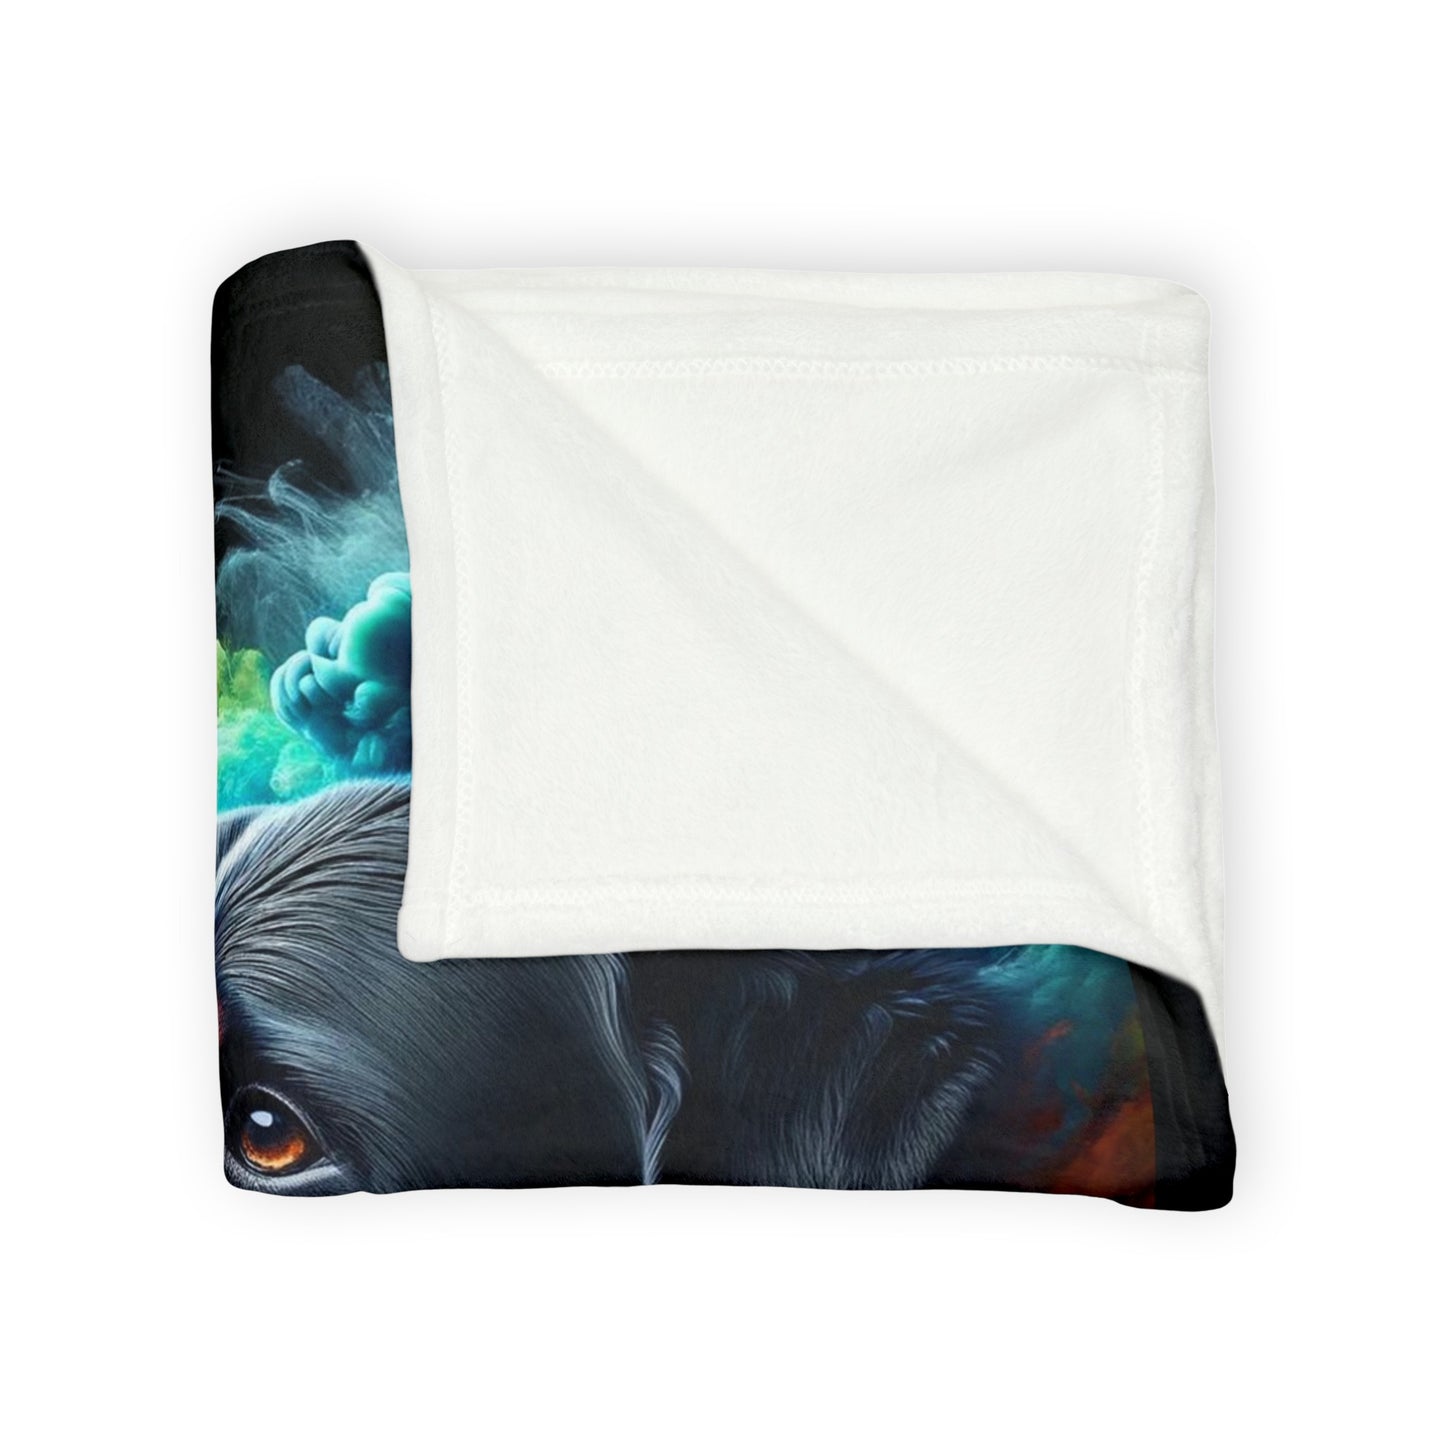 Rott Art - Explosion 2 - Soft Polyester Blanket